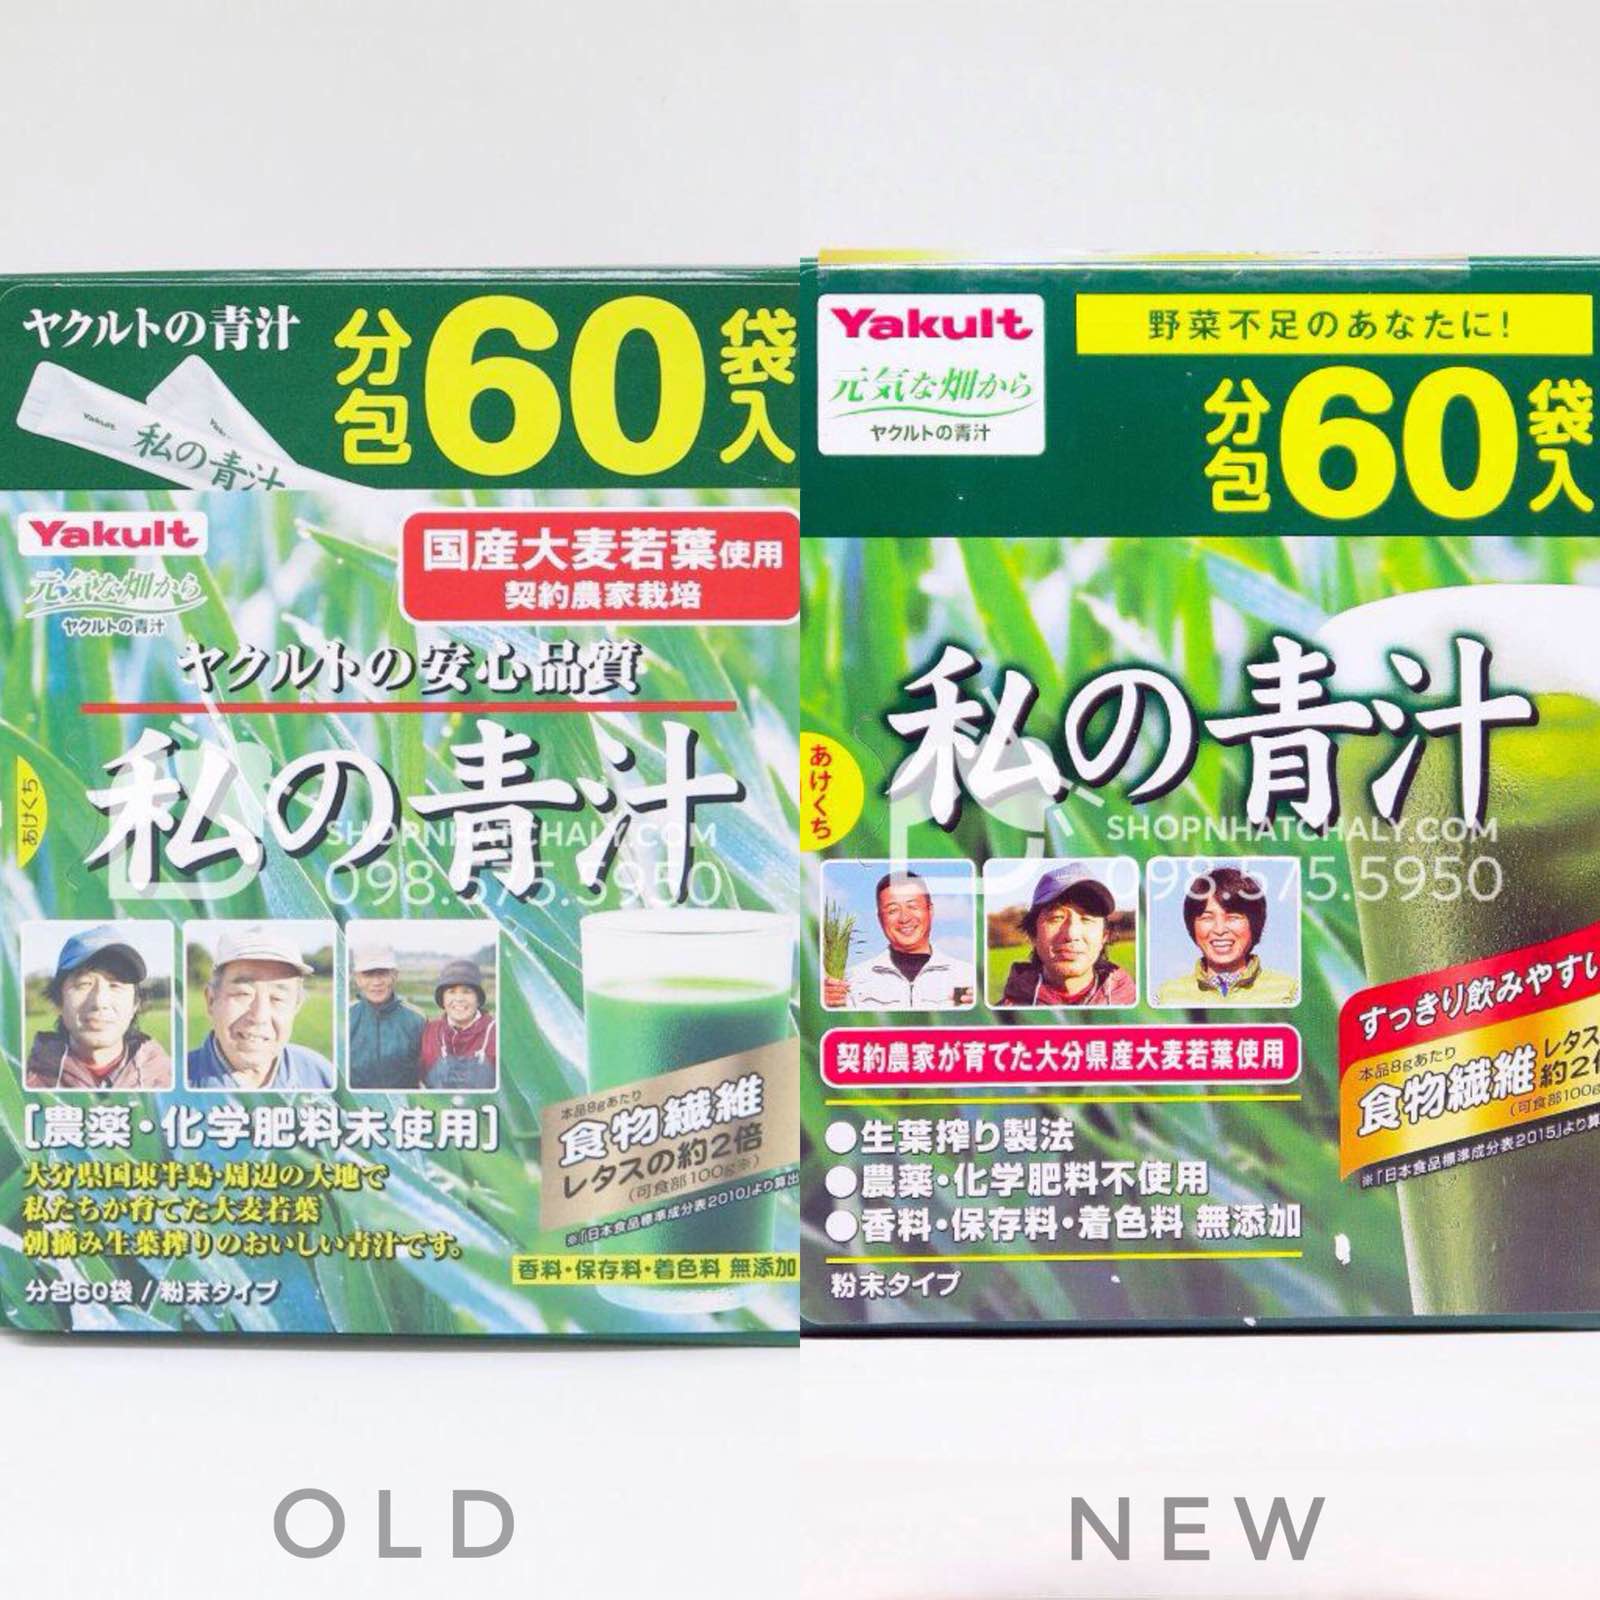 Bột rau xanh quốc sản Nhật Yakult 60 gói mẫu cũ (trái) và mẫu mới nhất hiện hành (phải)